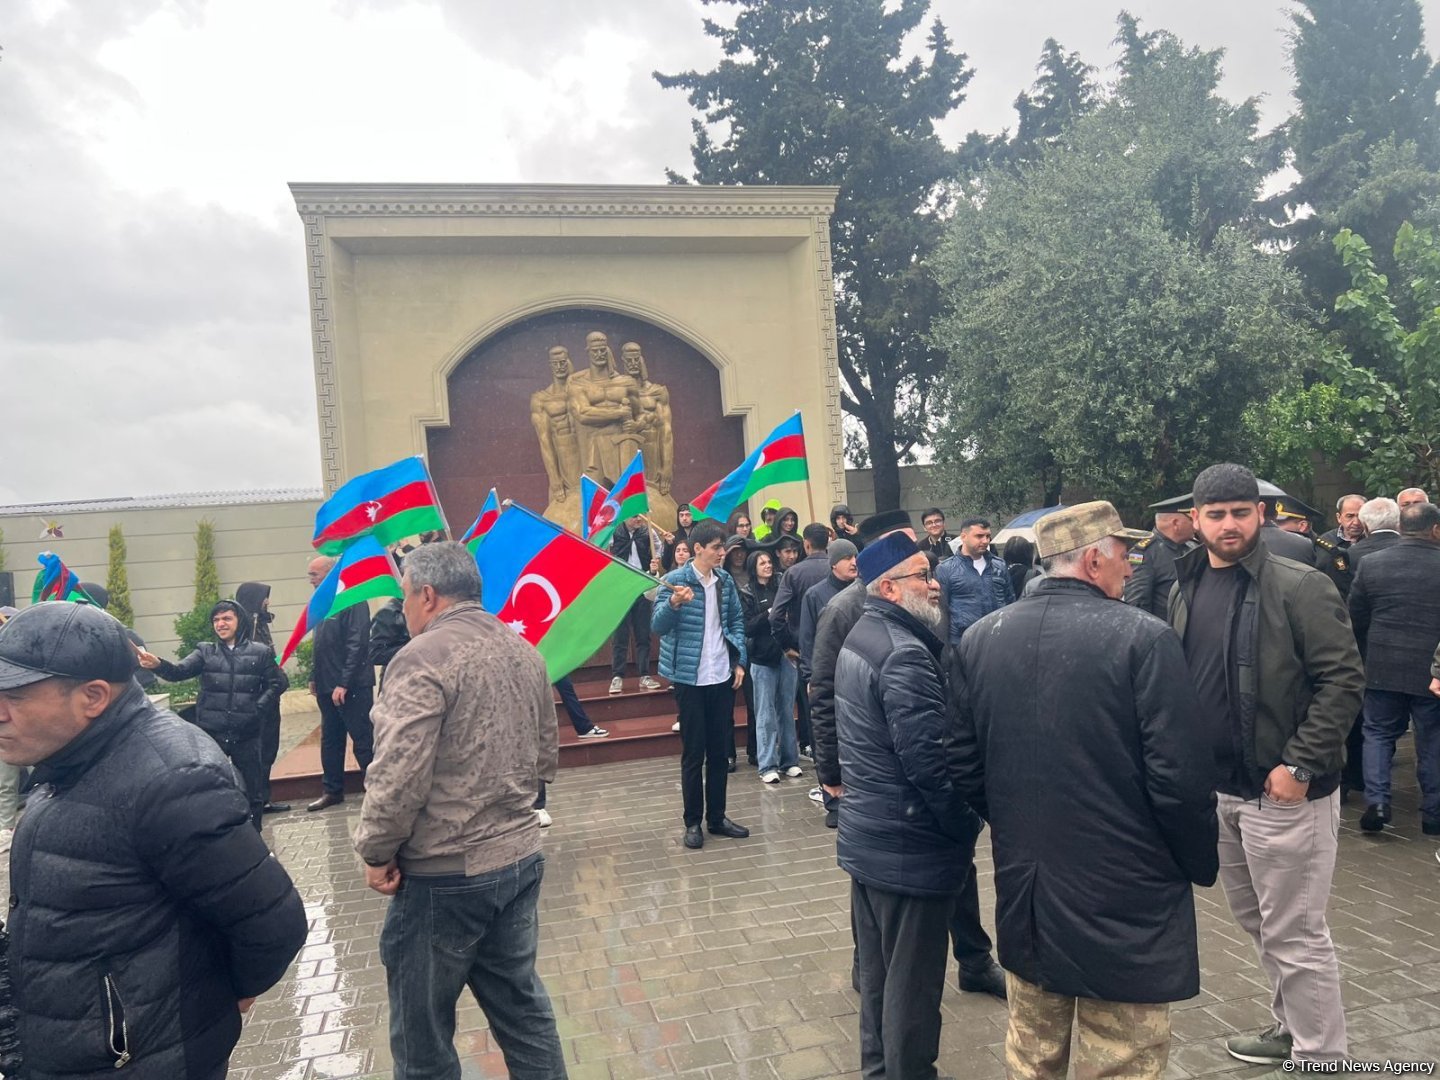 В Баку прошли похороны шехида, пропавшего без вести во время I Карабахской войны (ВИДЕО/ФОТО) (Обновлено)